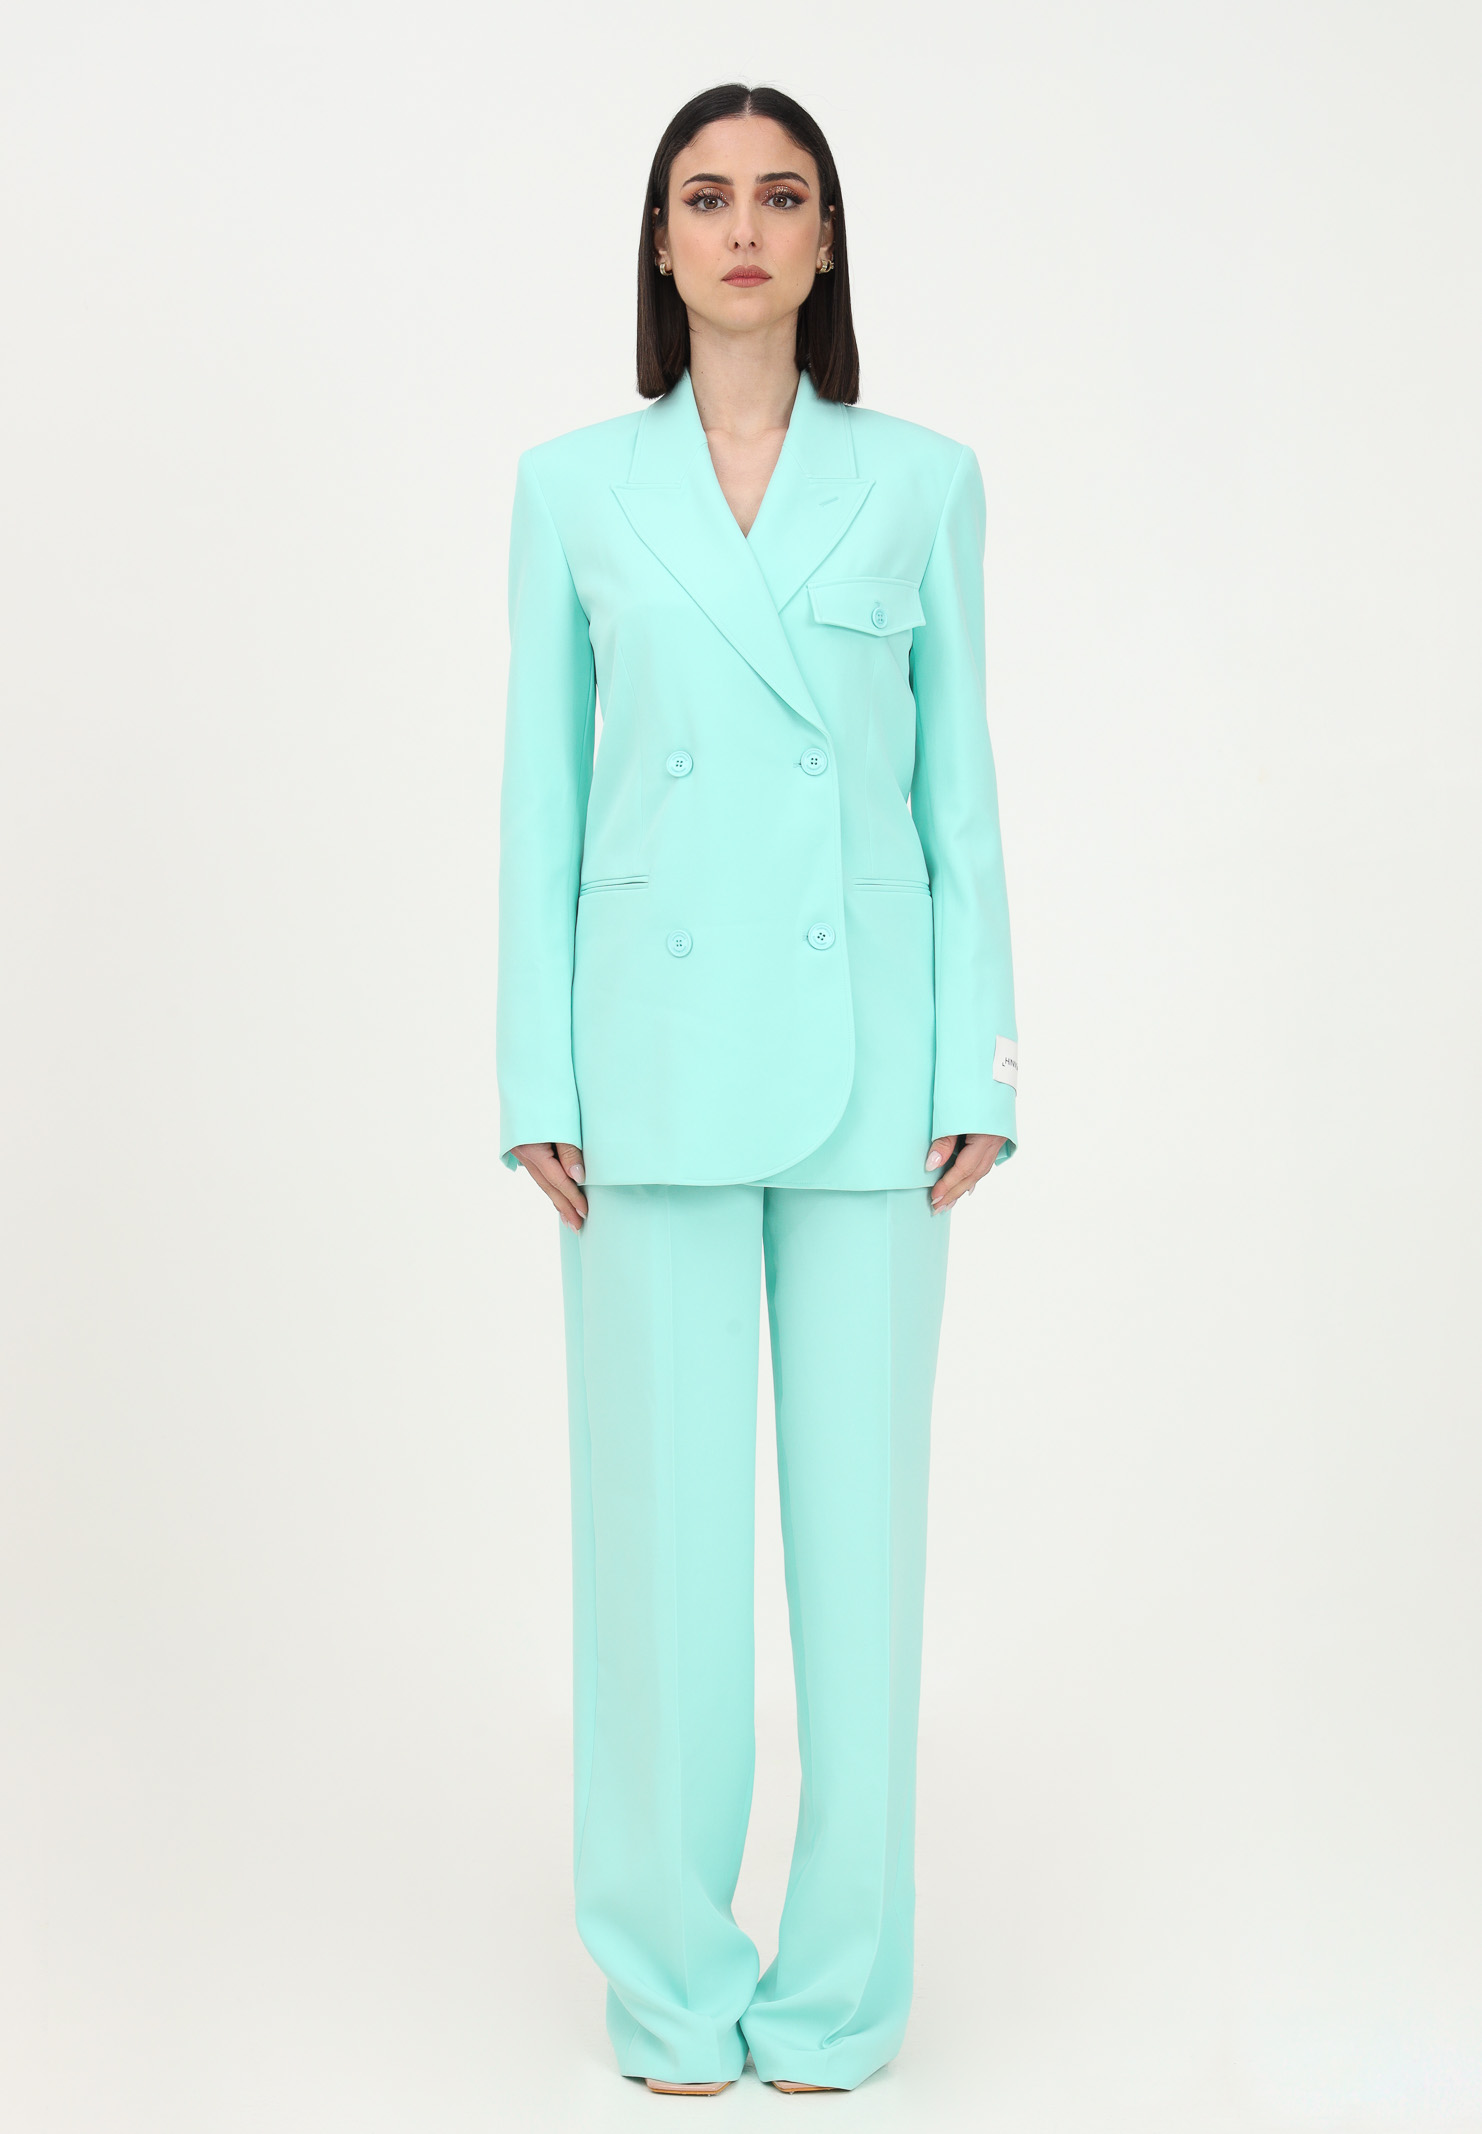 Women's mint green suit HINNOMINATE | HNW800VERDE MENTA